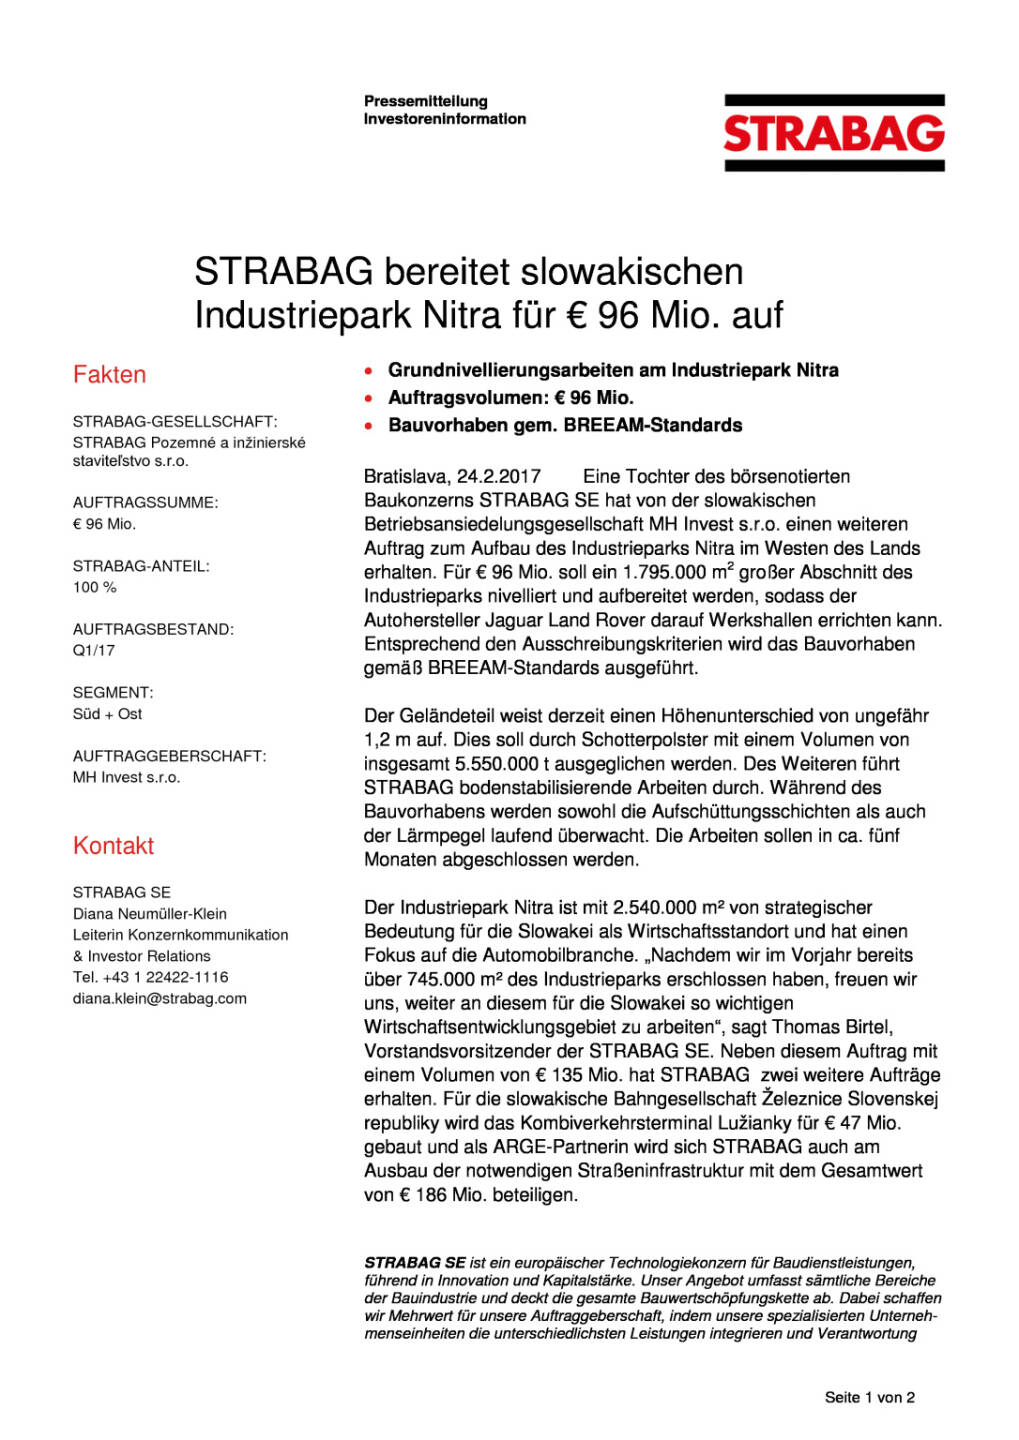 Strabag bereitet slowakischen Industriepark Nitra für 96 Mio. Euro auf, Seite 1/2, komplettes Dokument unter http://boerse-social.com/static/uploads/file_2128_strabag_bereitet_slowakischen_industriepark_nitra_fur_96_mio_euro_auf.pdf